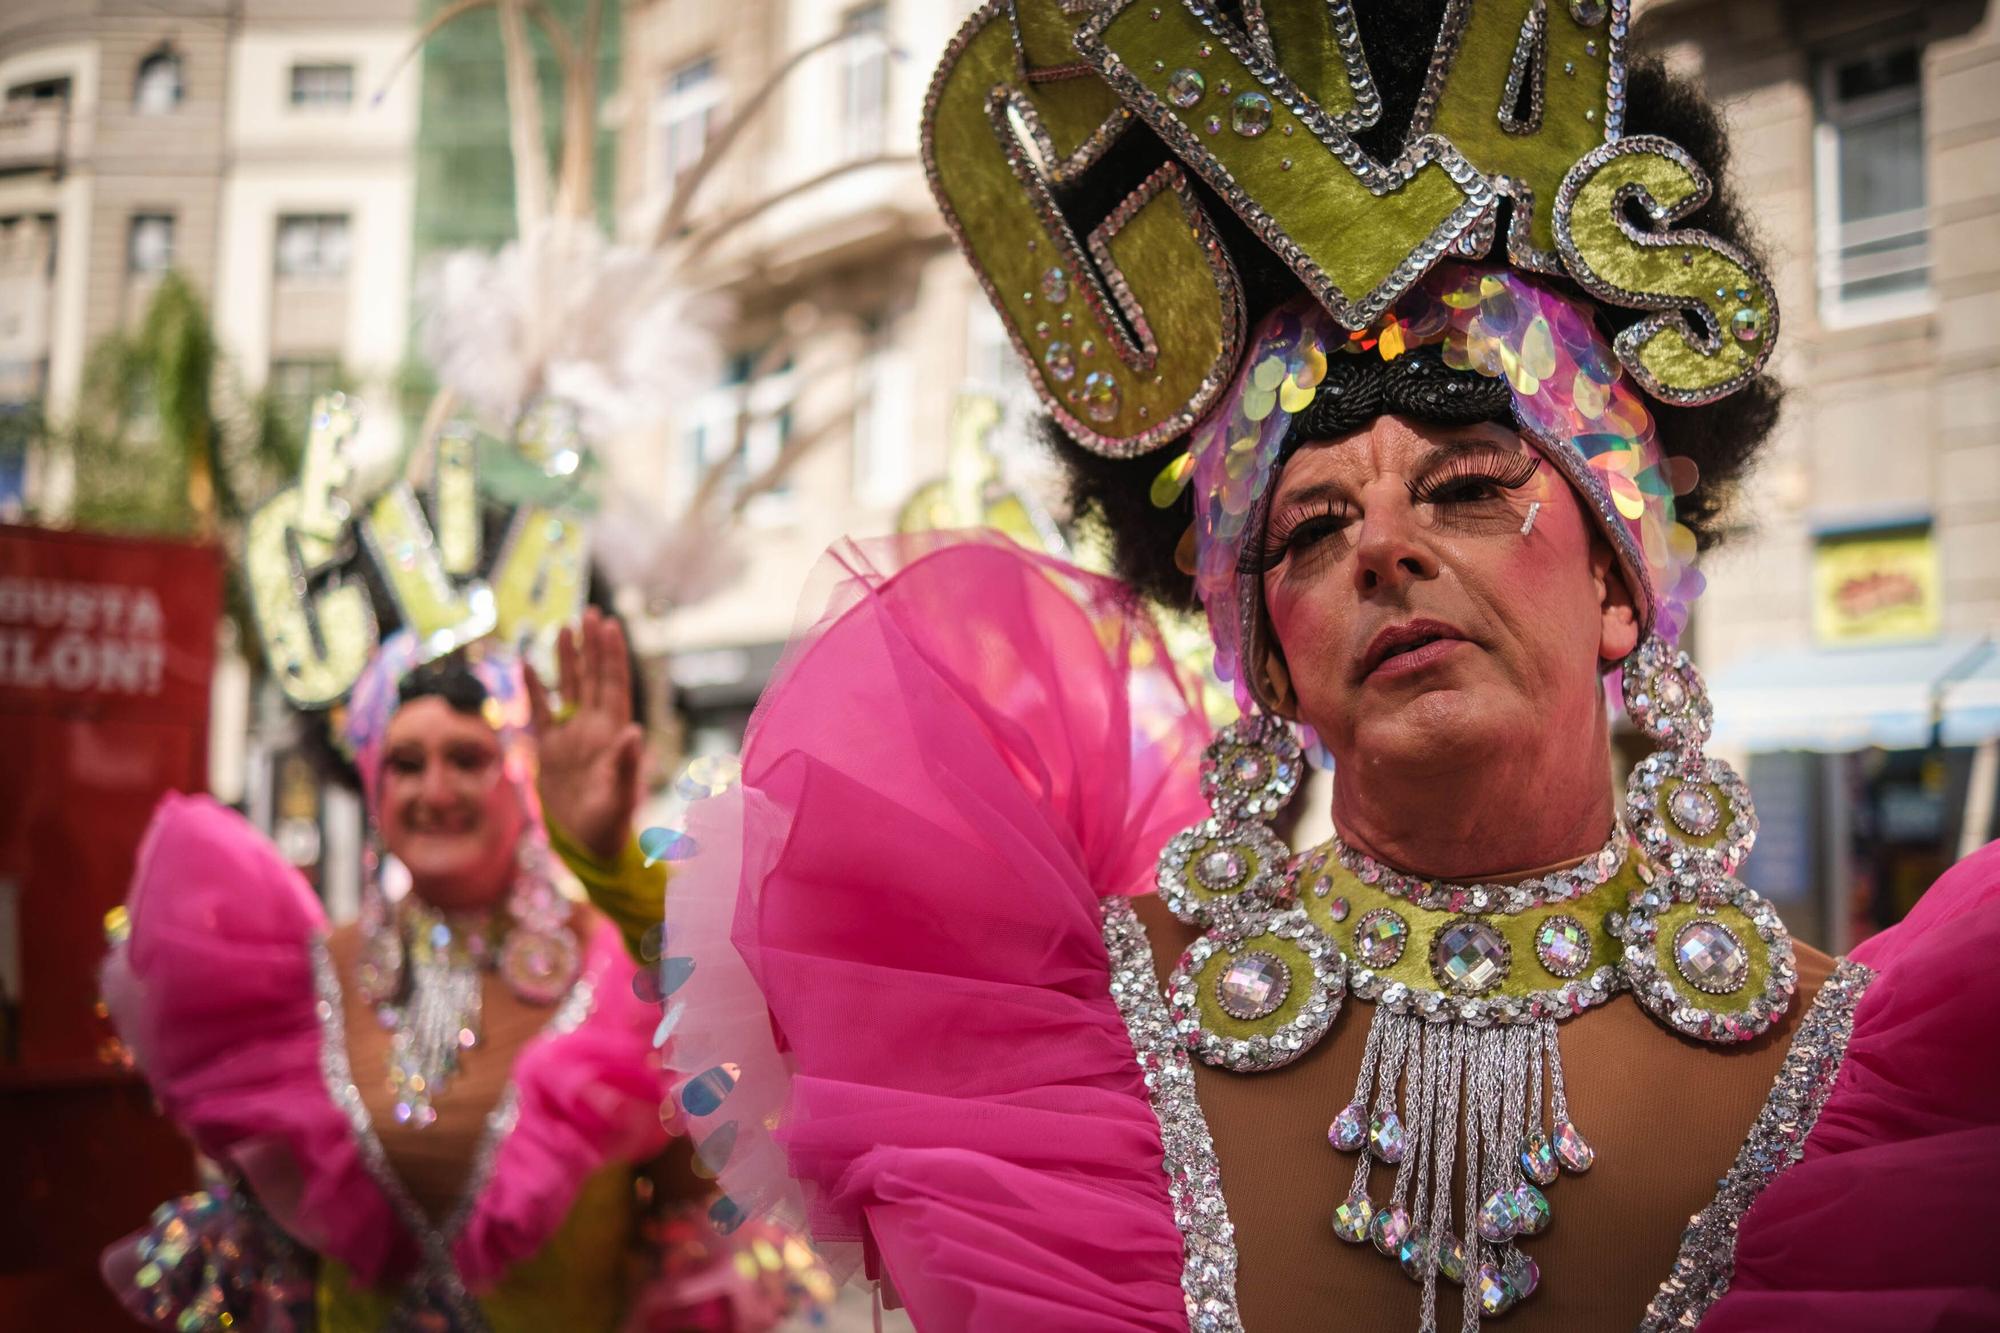 Carnaval de Día de Santa Cruz de Tenerife